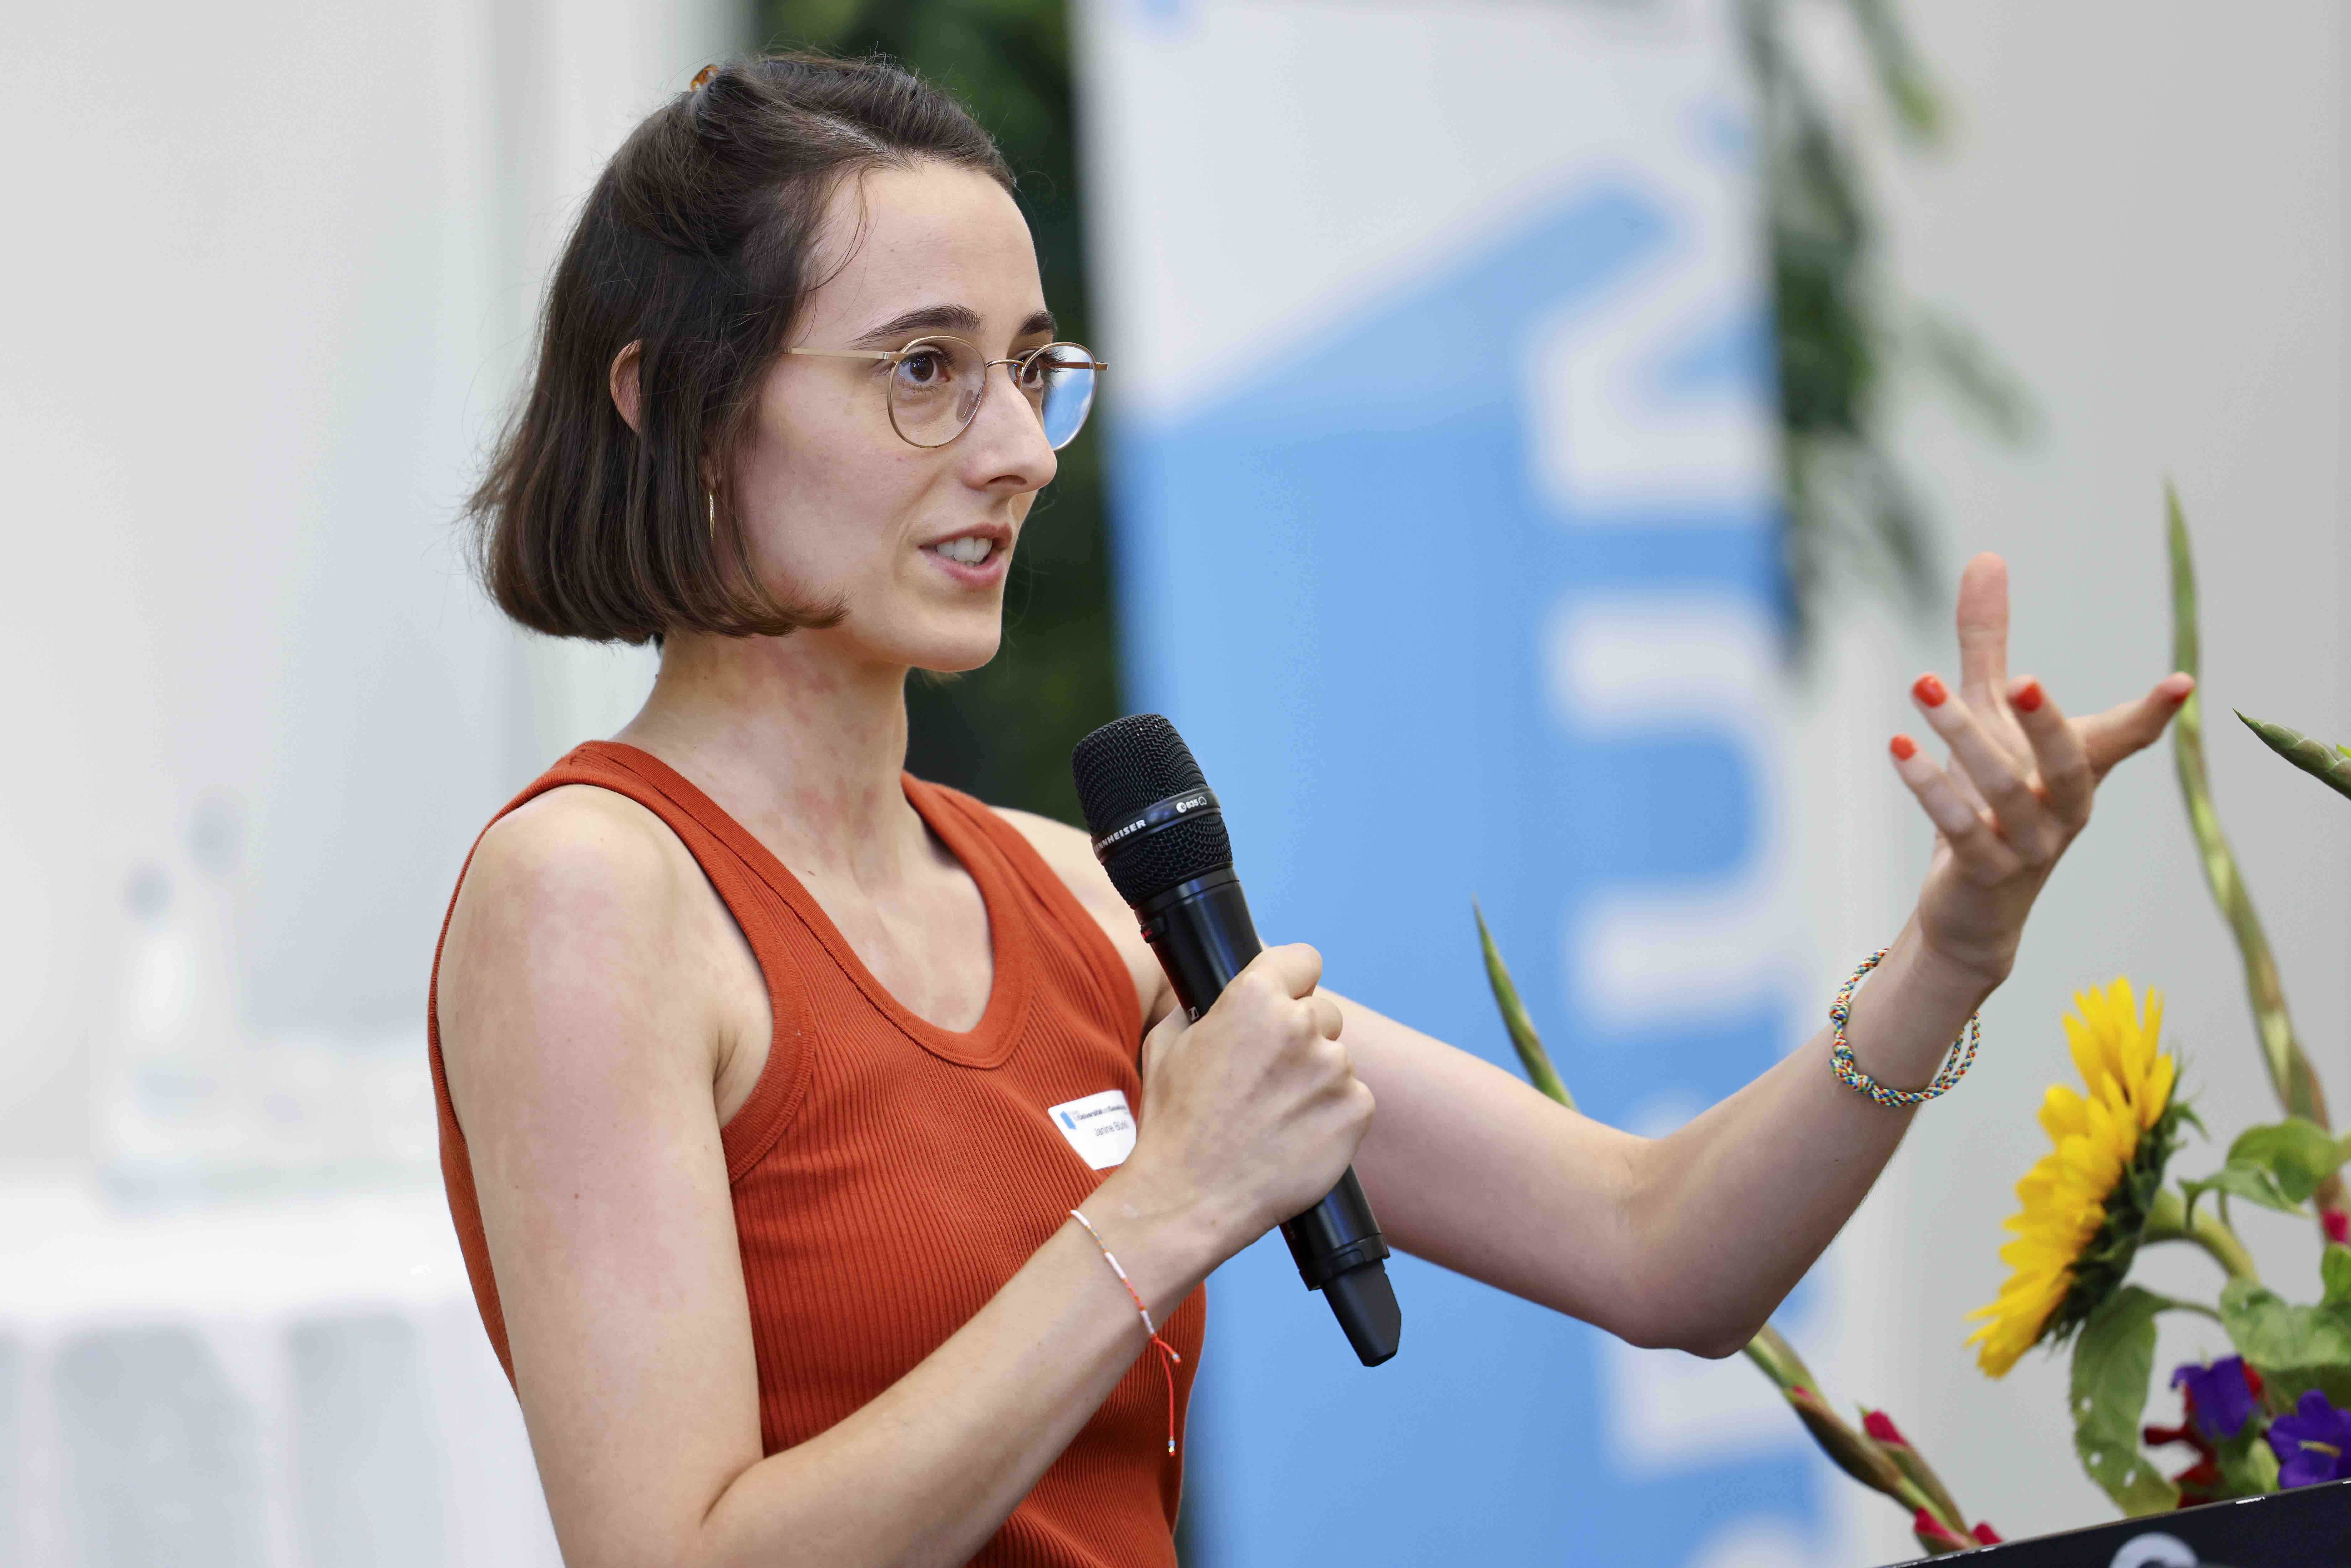 Die Referentin Janine Bürkli spricht in ein Handmikrofon und gestikuliert mit der linken Hand. Im Hintergrund ist das blauweisse Banner mit dem Forumslogo erkennbar.